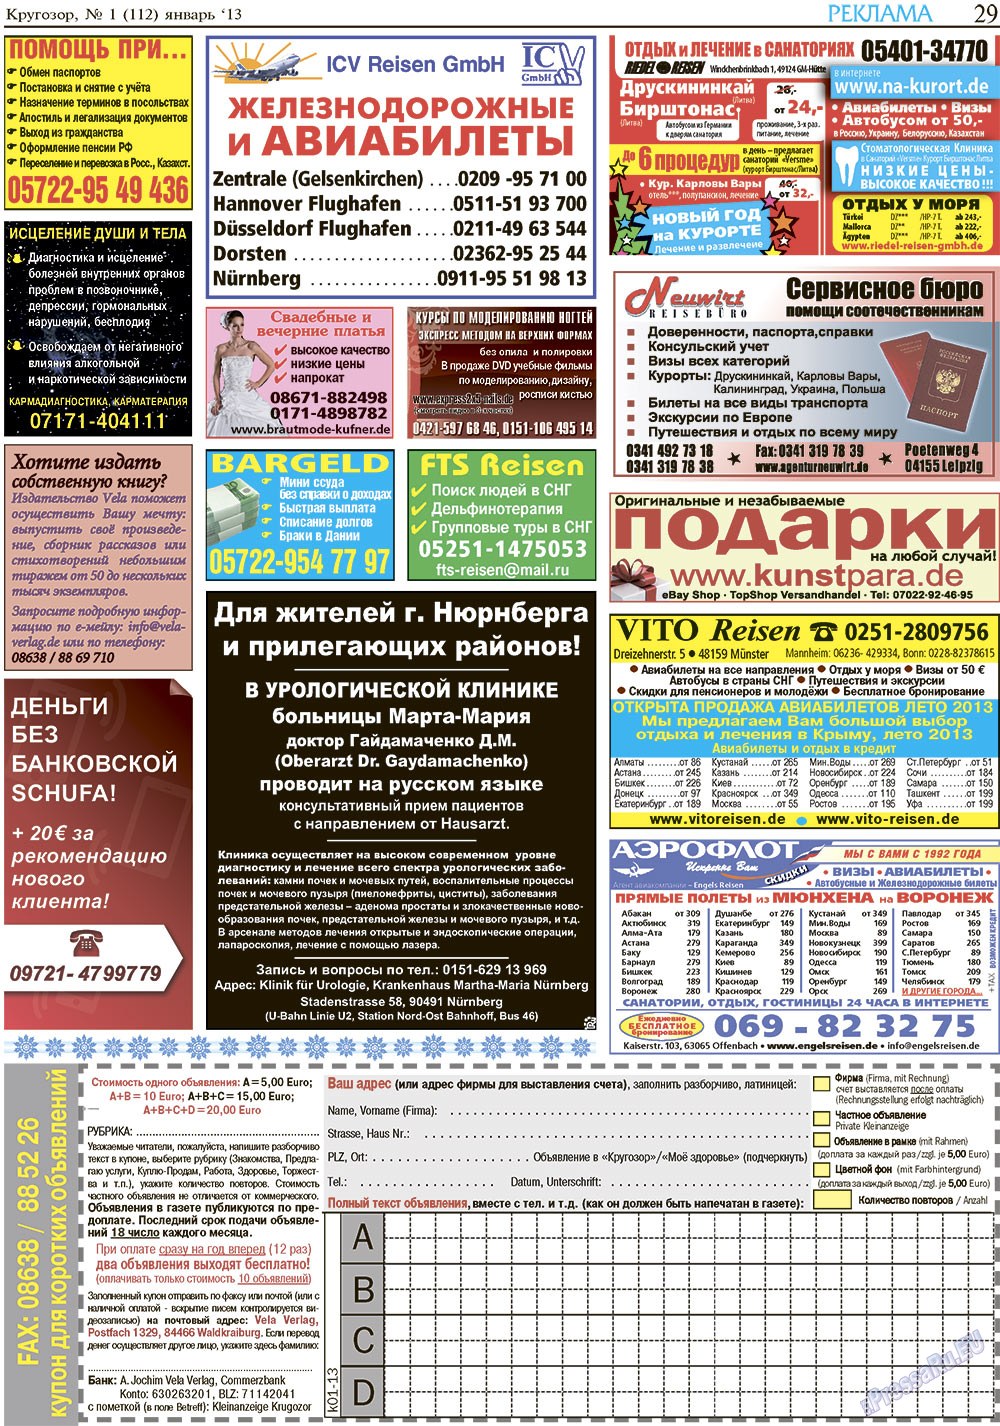 Кругозор, газета. 2013 №1 стр.29